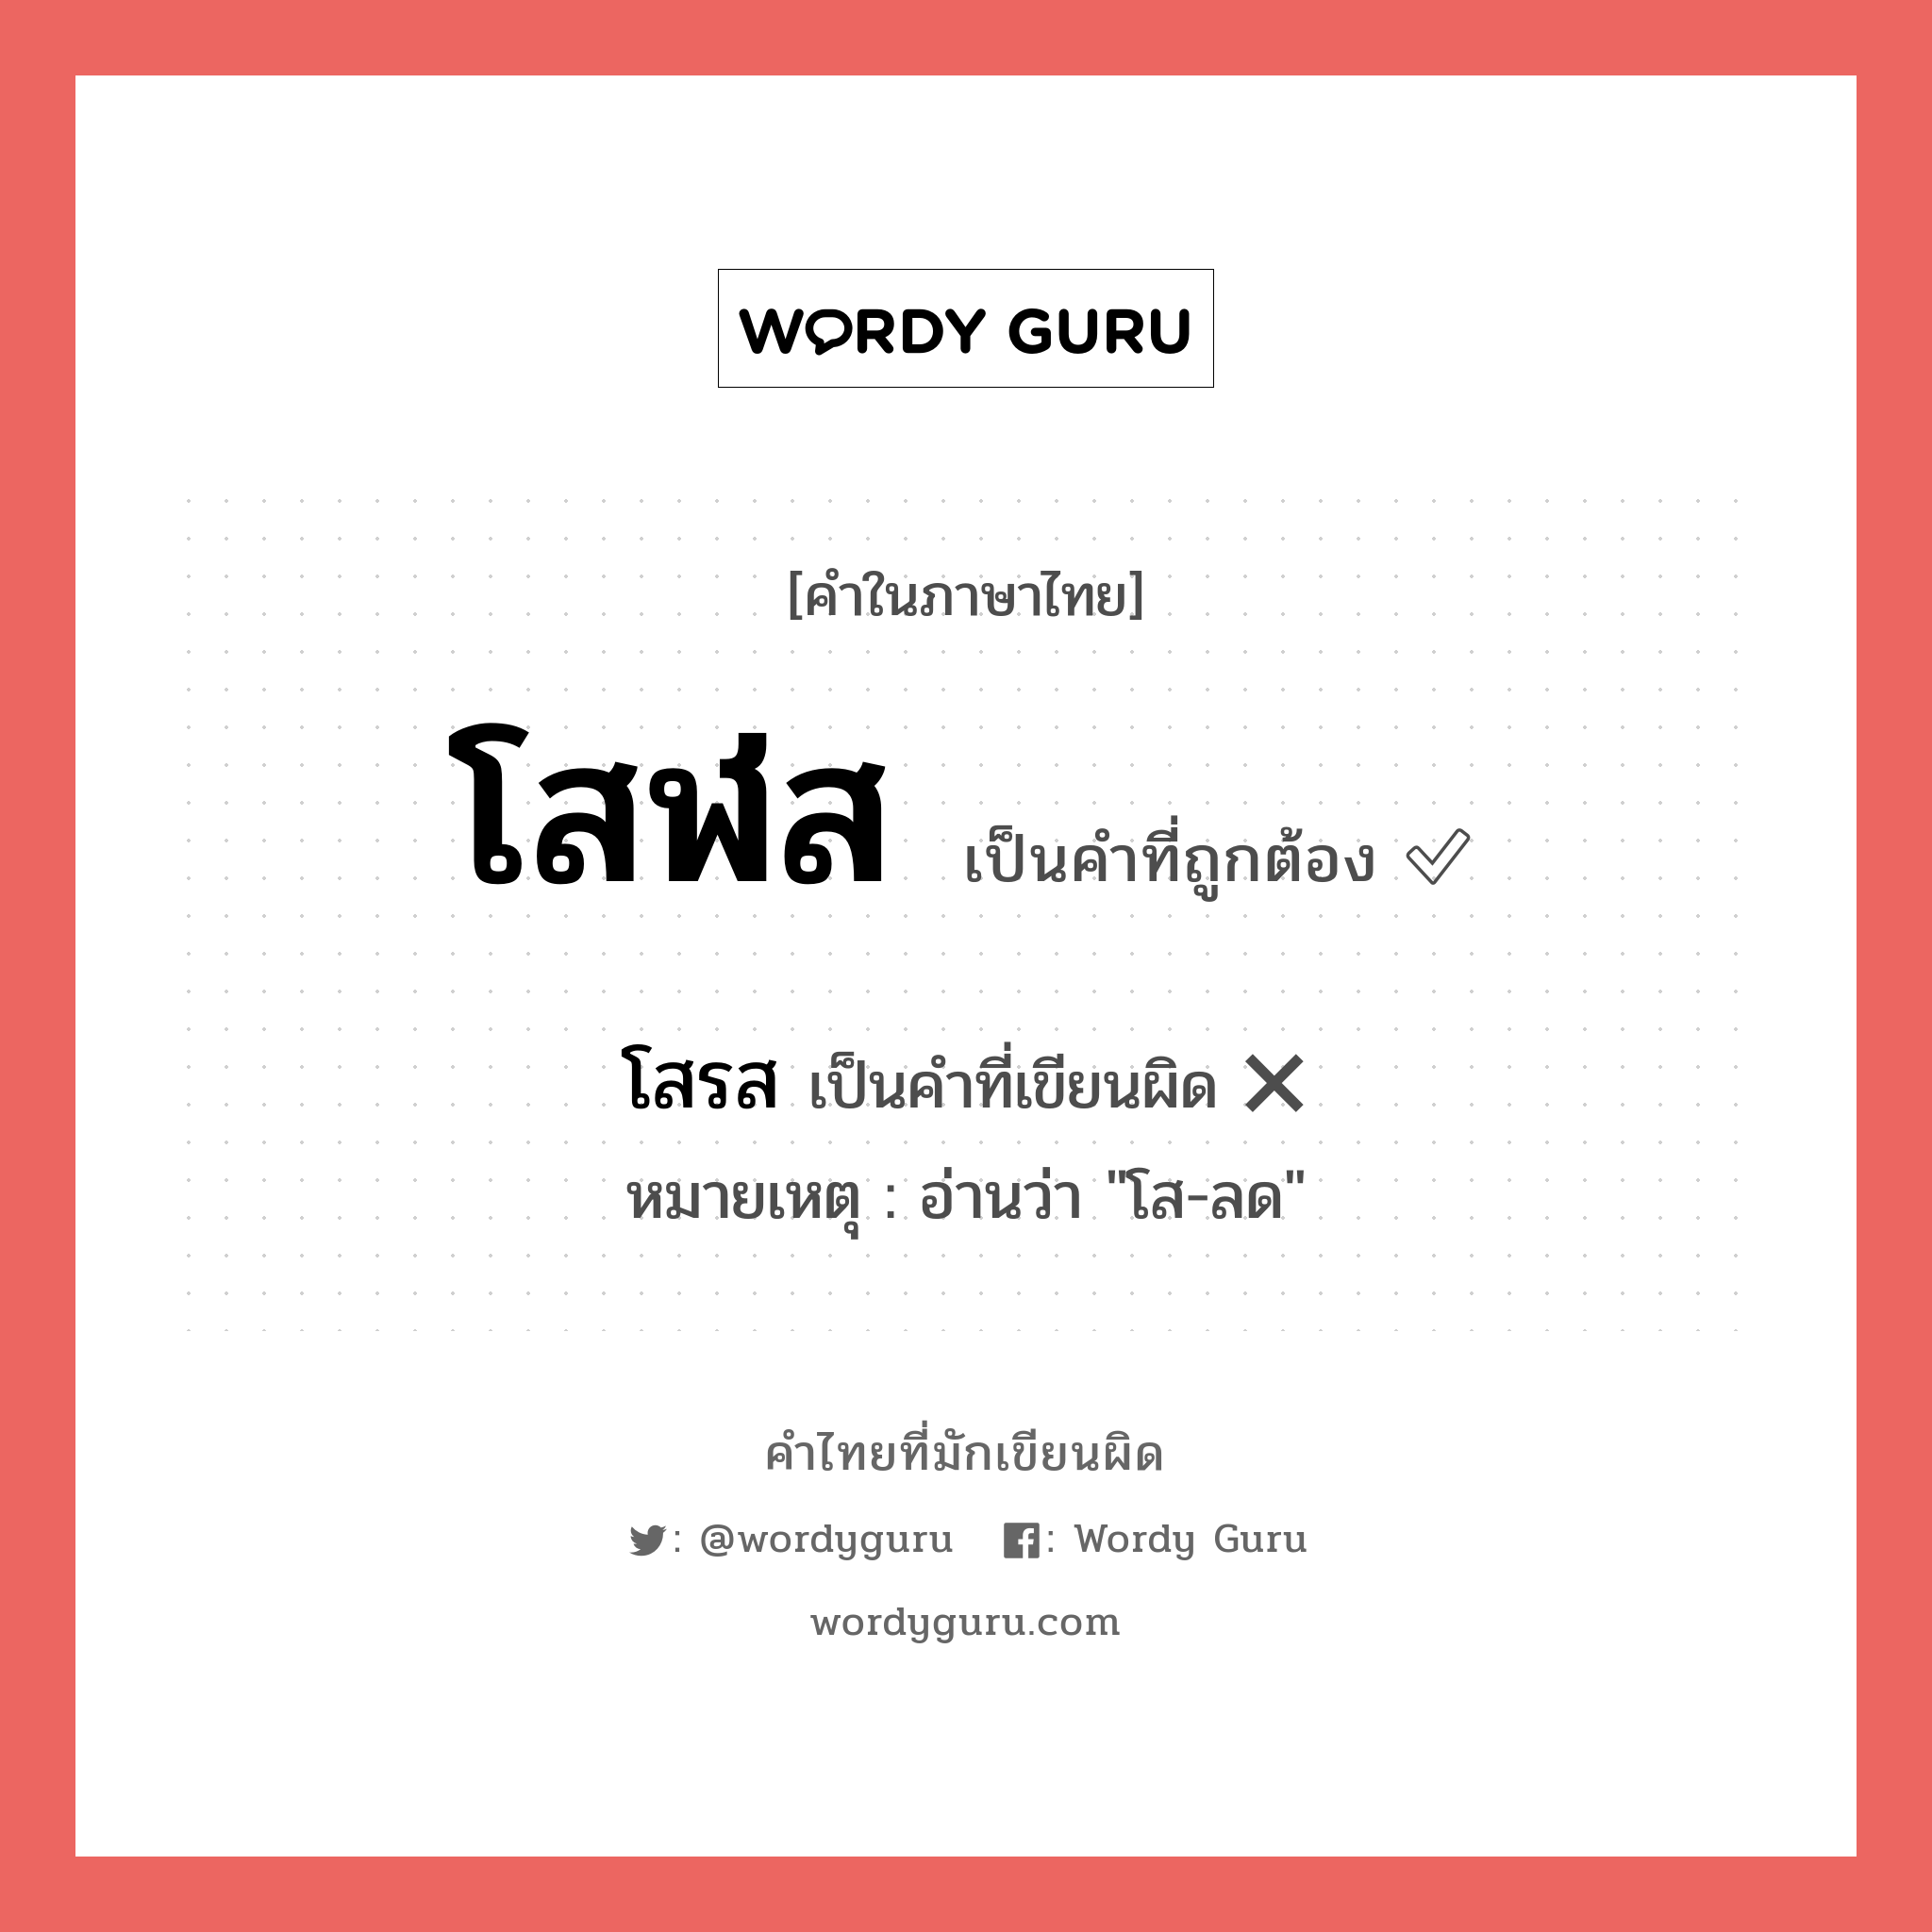 โสฬส หรือ โสรส คำไหนเขียนถูก?, คำในภาษาไทยที่มักเขียนผิด โสฬส คำที่ผิด ❌ โสรส หมายเหตุ อ่านว่า "โส-ลด"